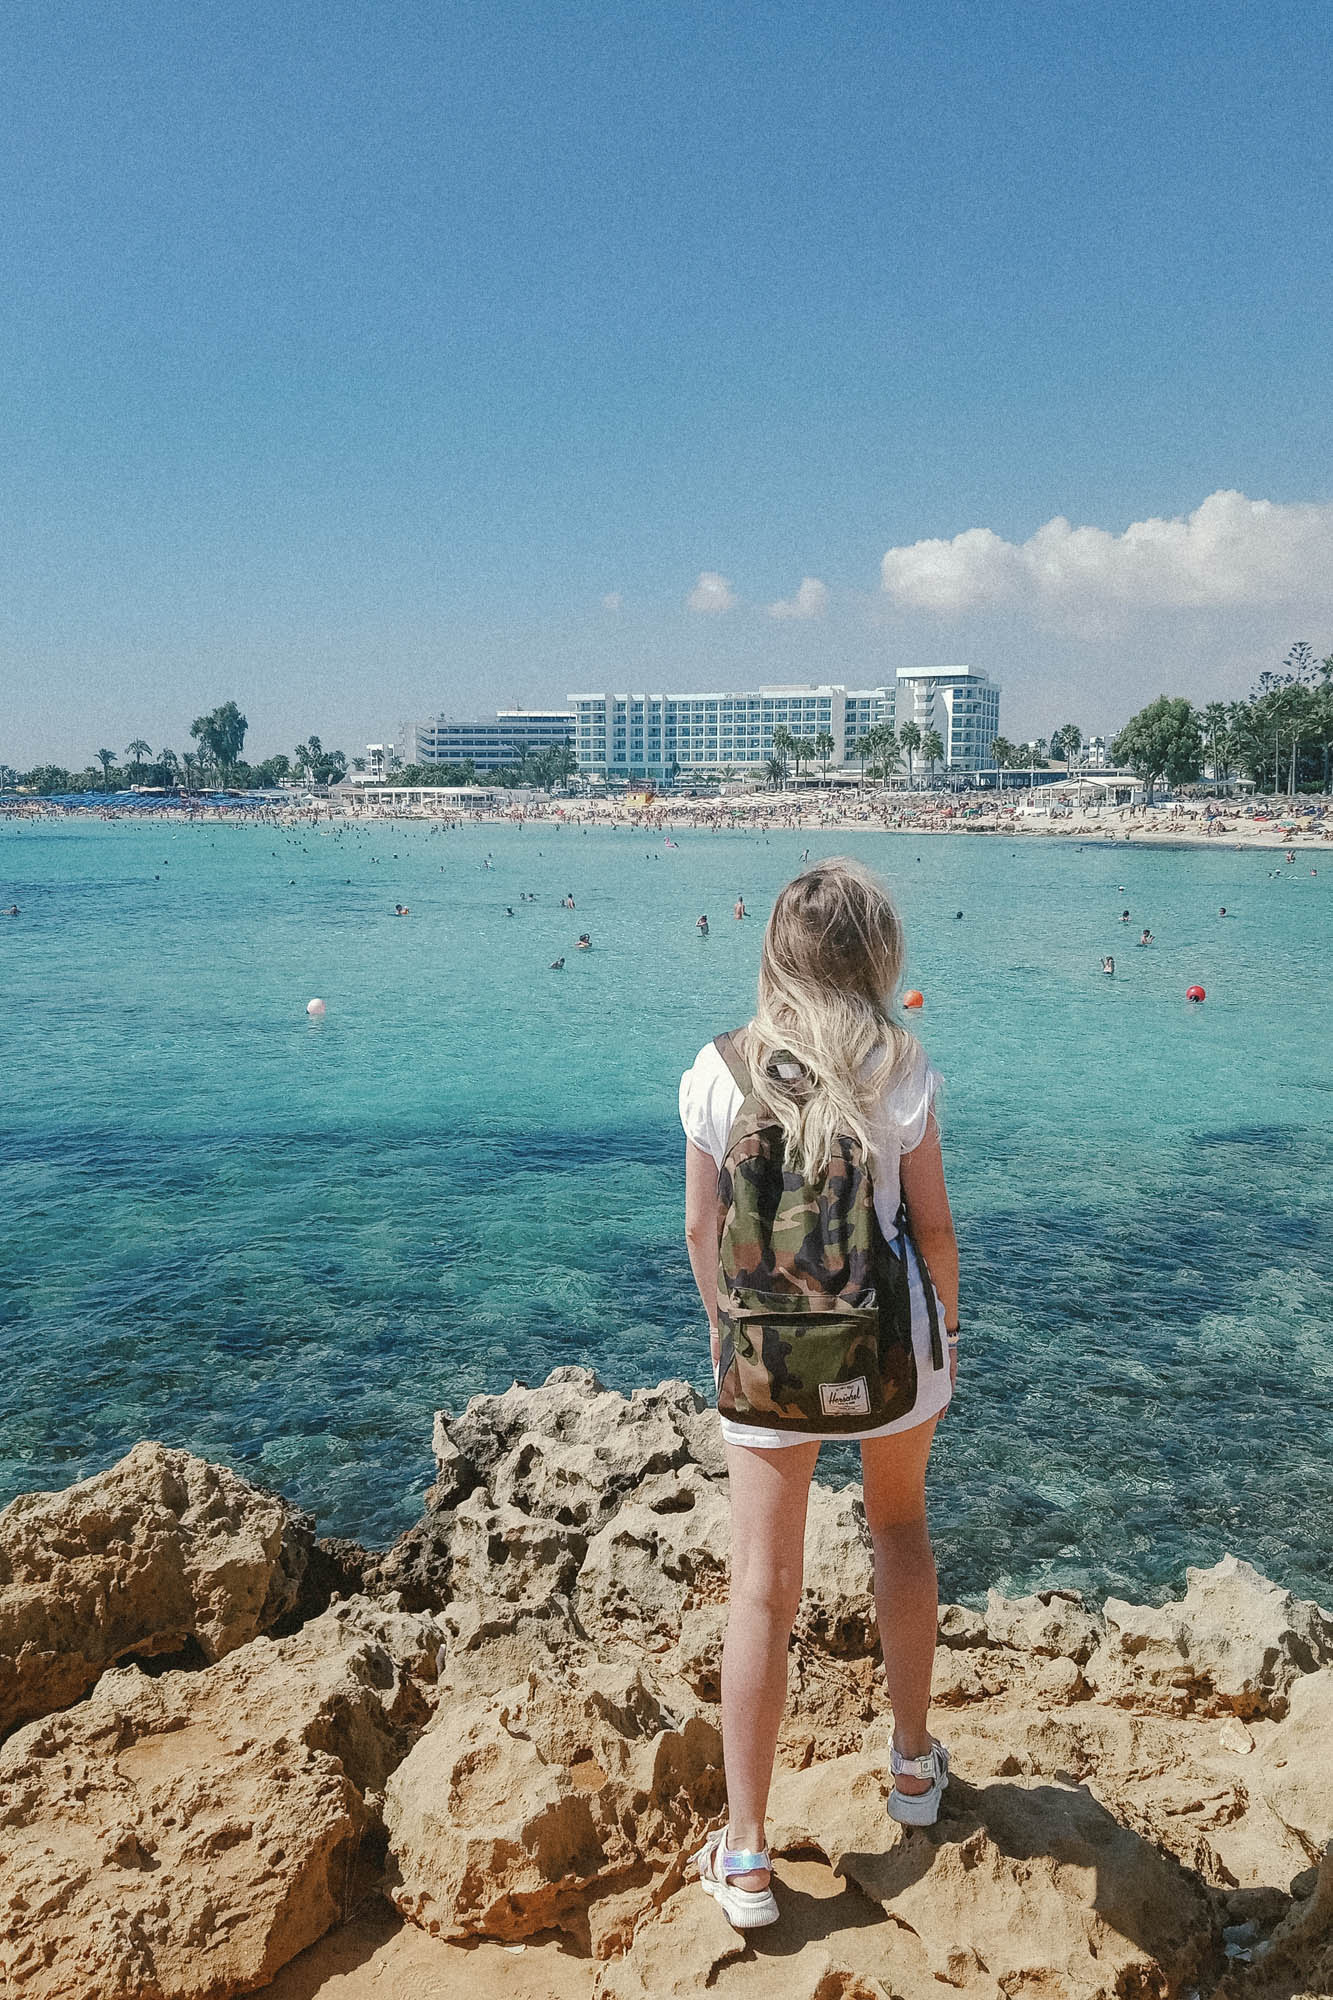 widok na wybrzeże w mieście larnaka, dziewczyna stojąca na skałach, na skalistym klifie , patrzy na lazurowe morze i hotele w oddali